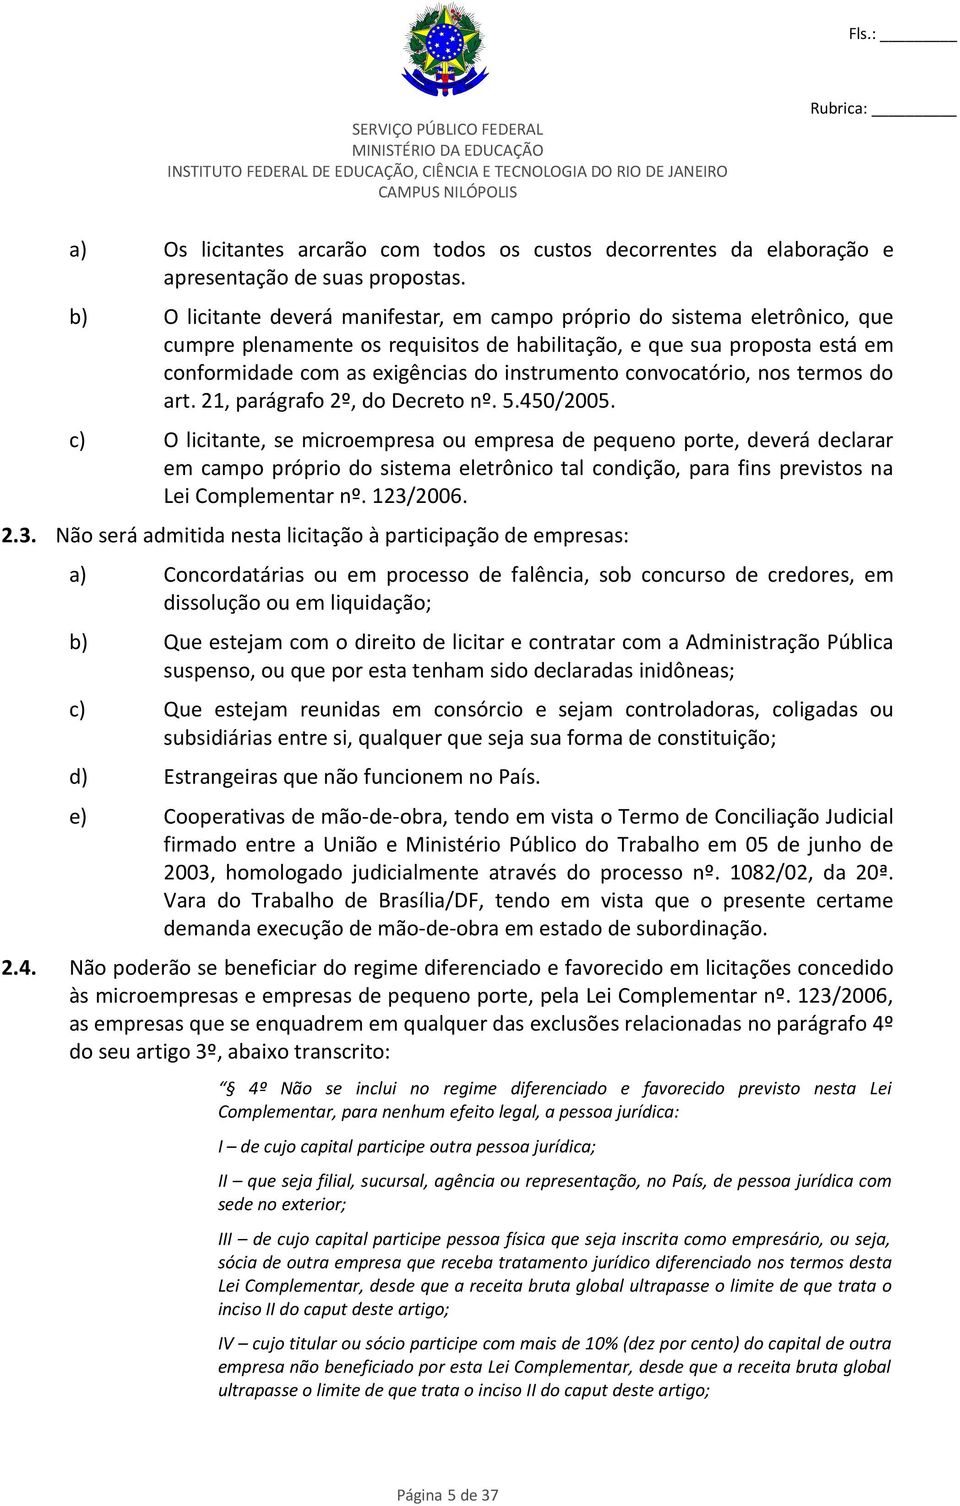 convocatório, nos termos do art. 21, parágrafo 2º, do Decreto nº. 5.450/2005.